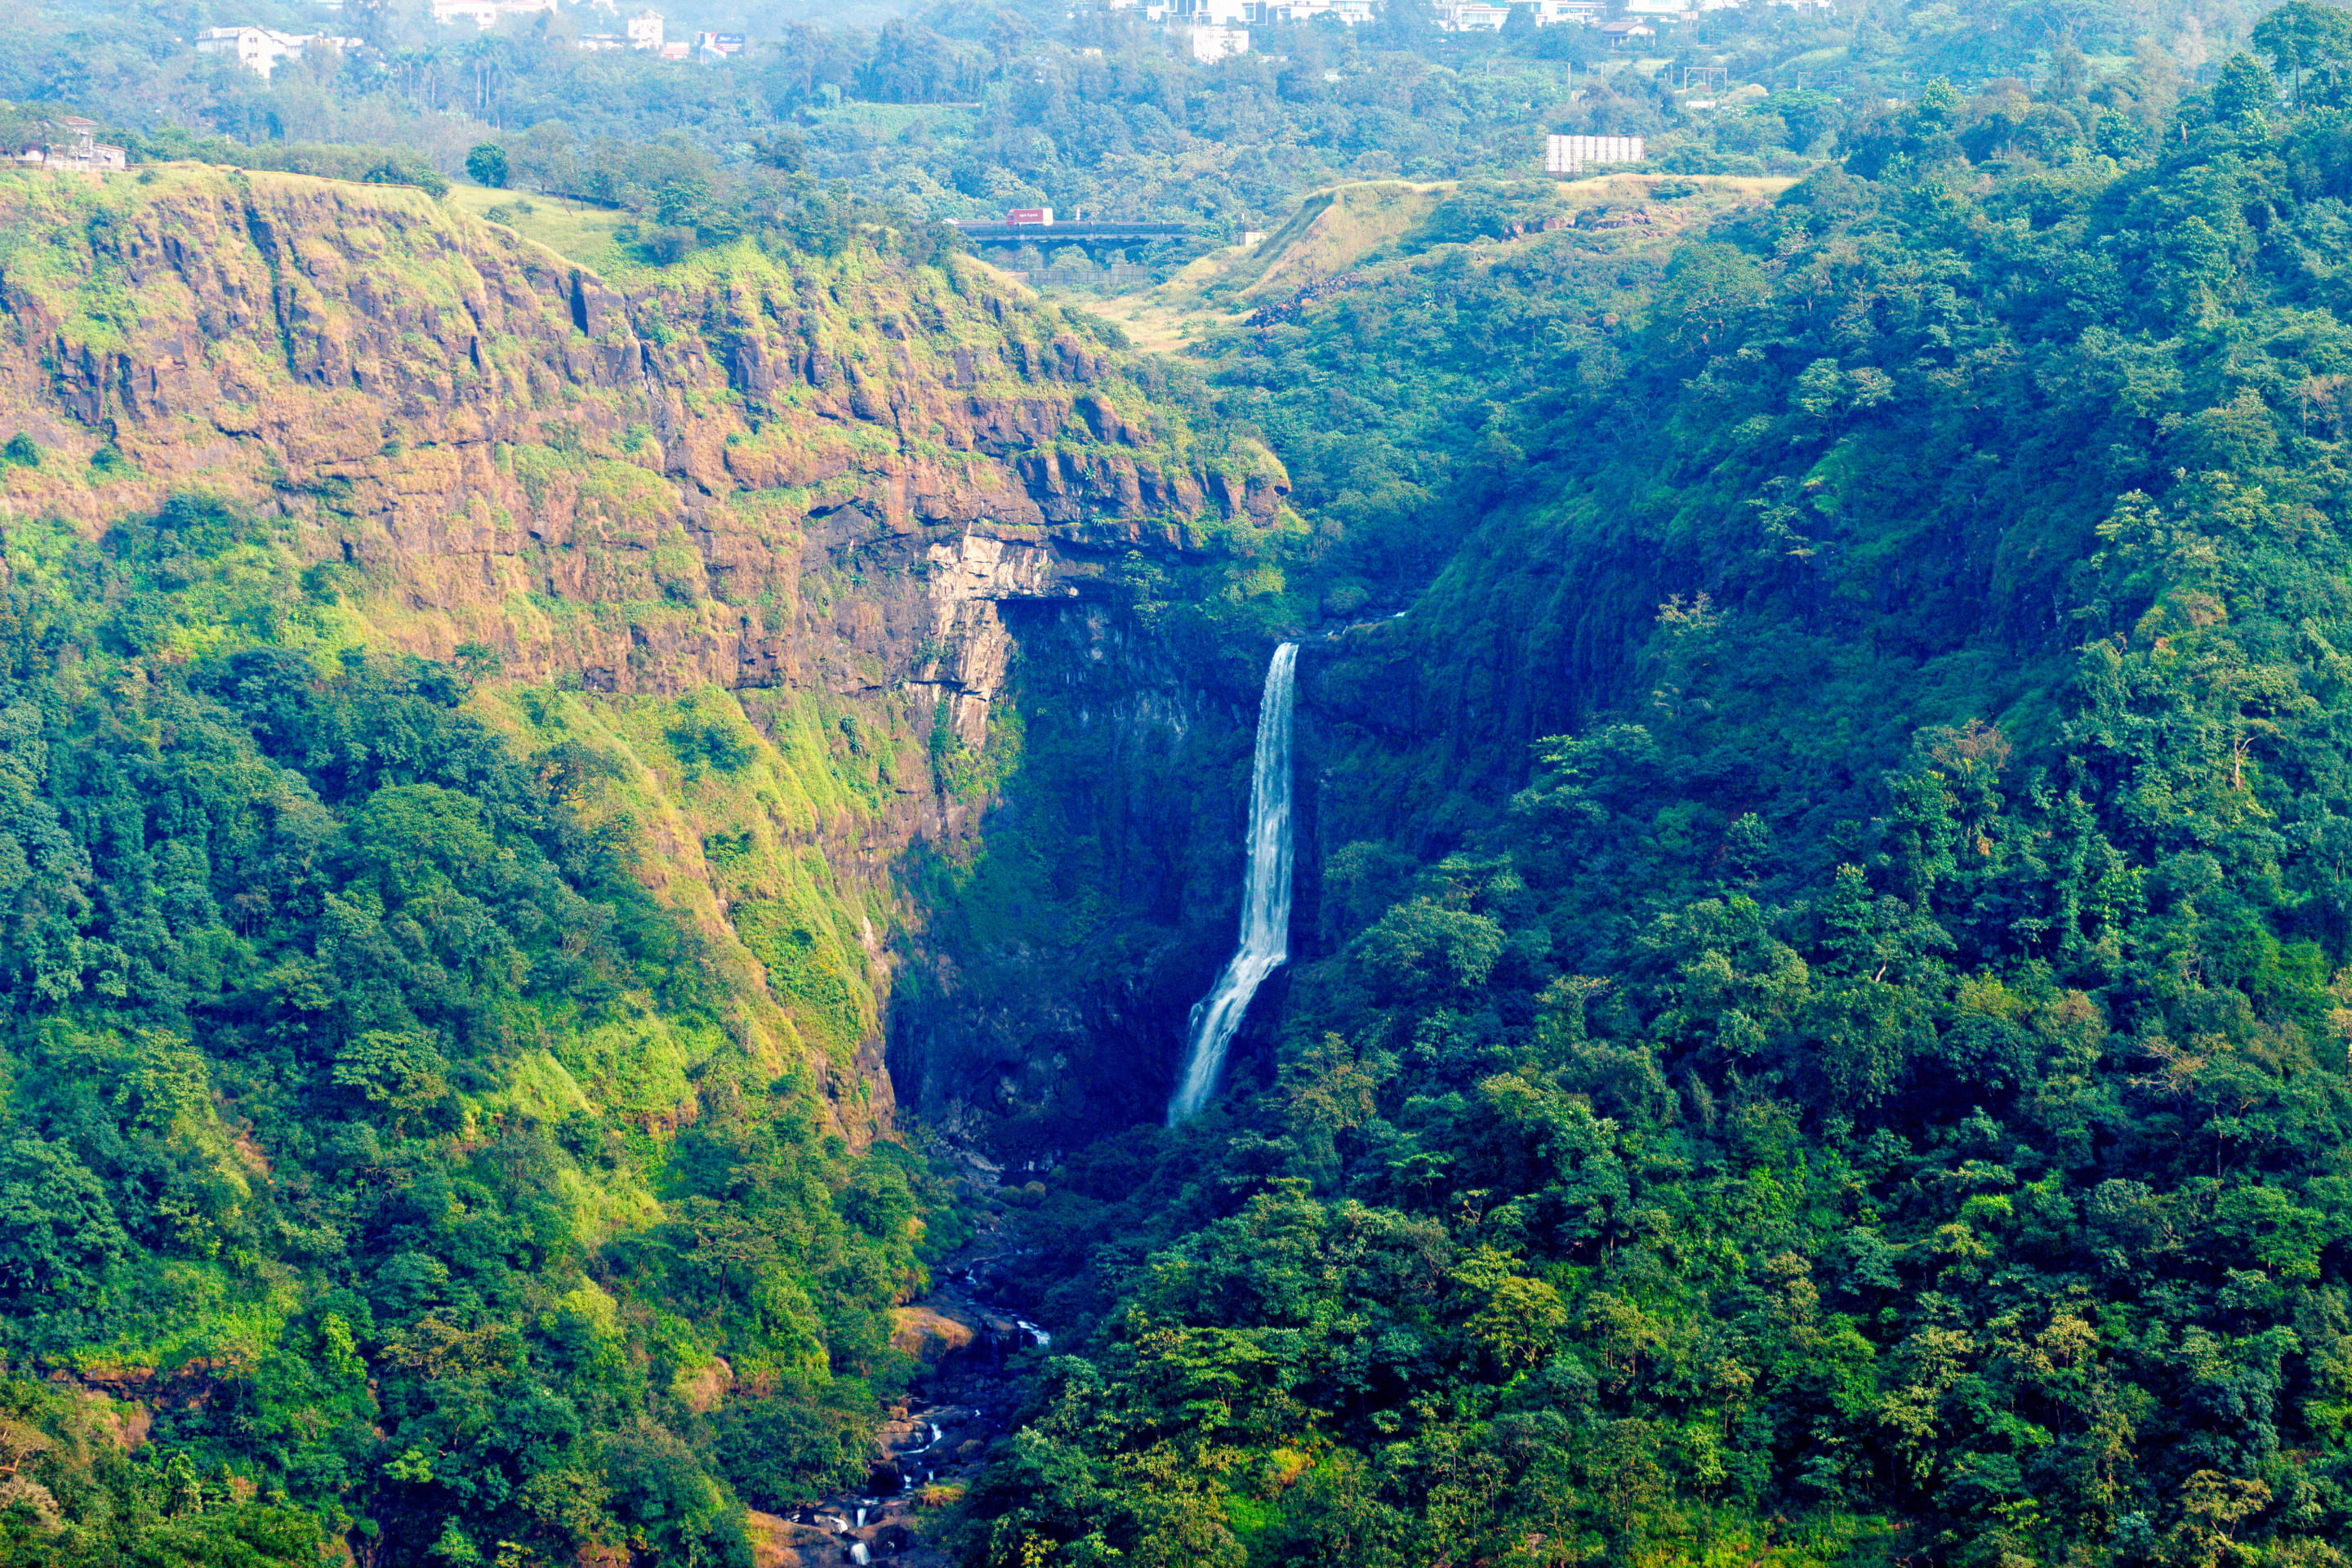 Kune Waterfalls Overview